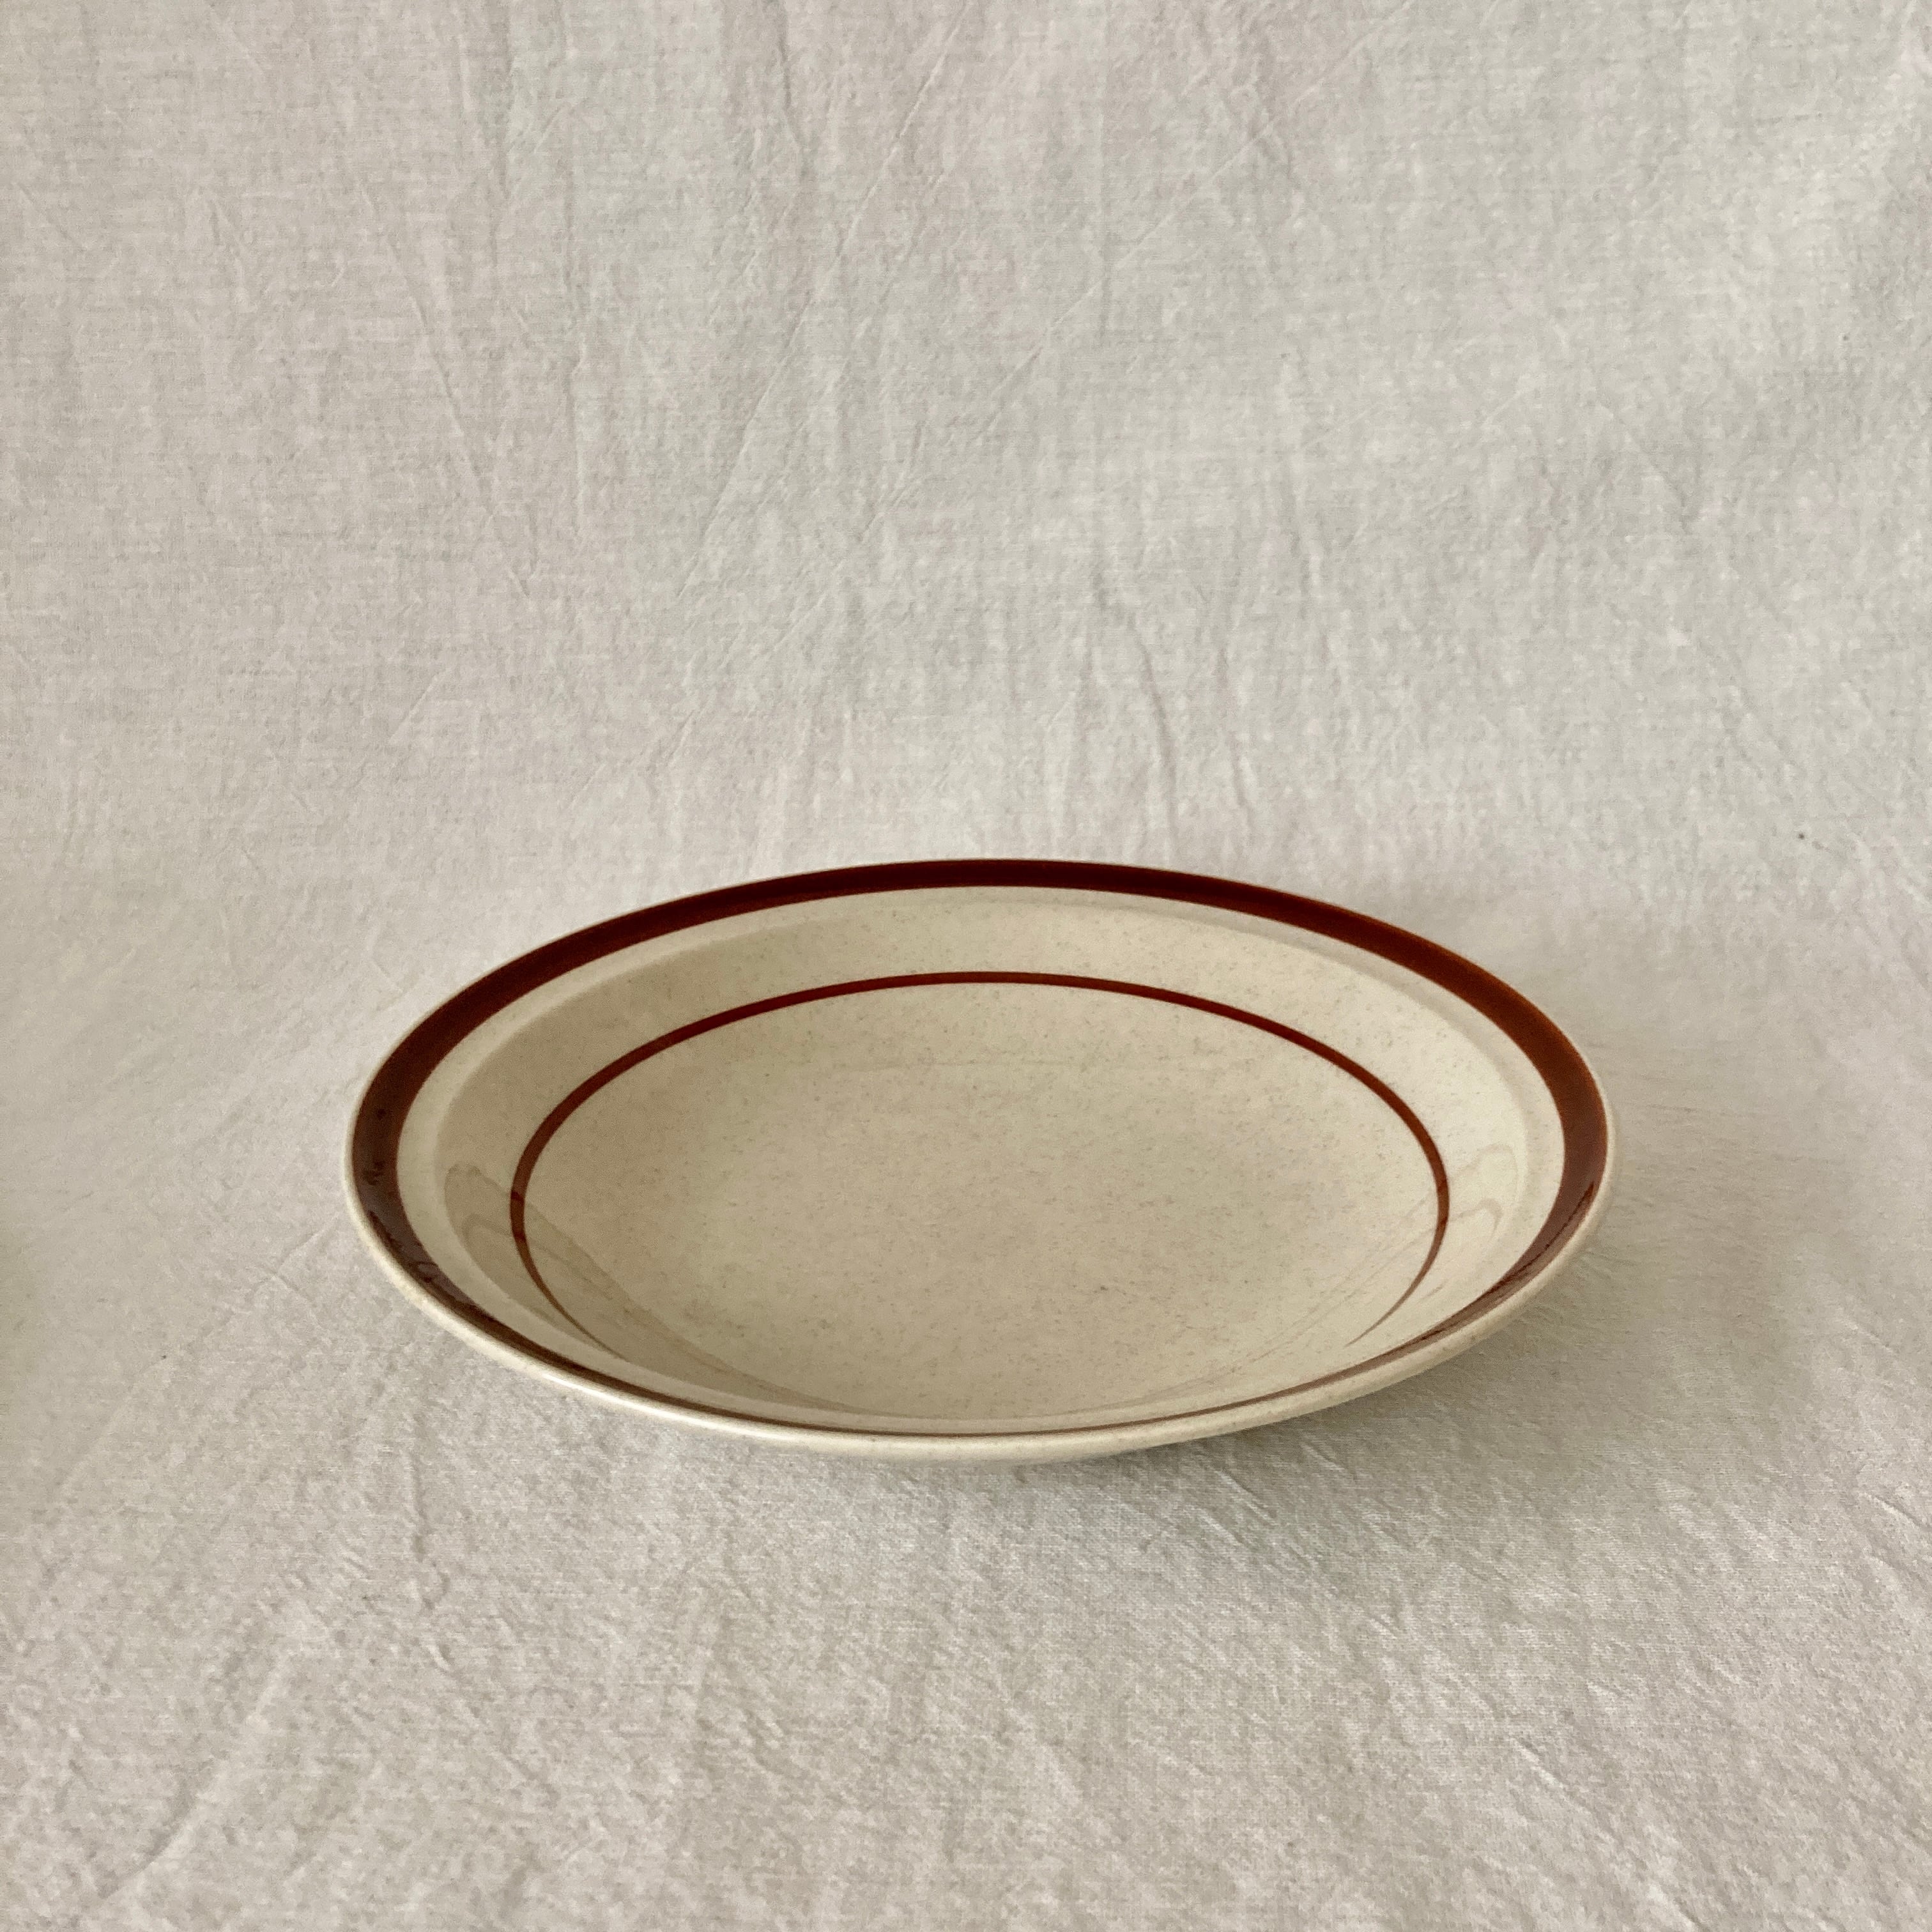 高級ブランド キッチン用品 食器 調理器具 陶器 シラキュース最愛のディナープレートSyracuse BELOVED Dinner Plate  701059